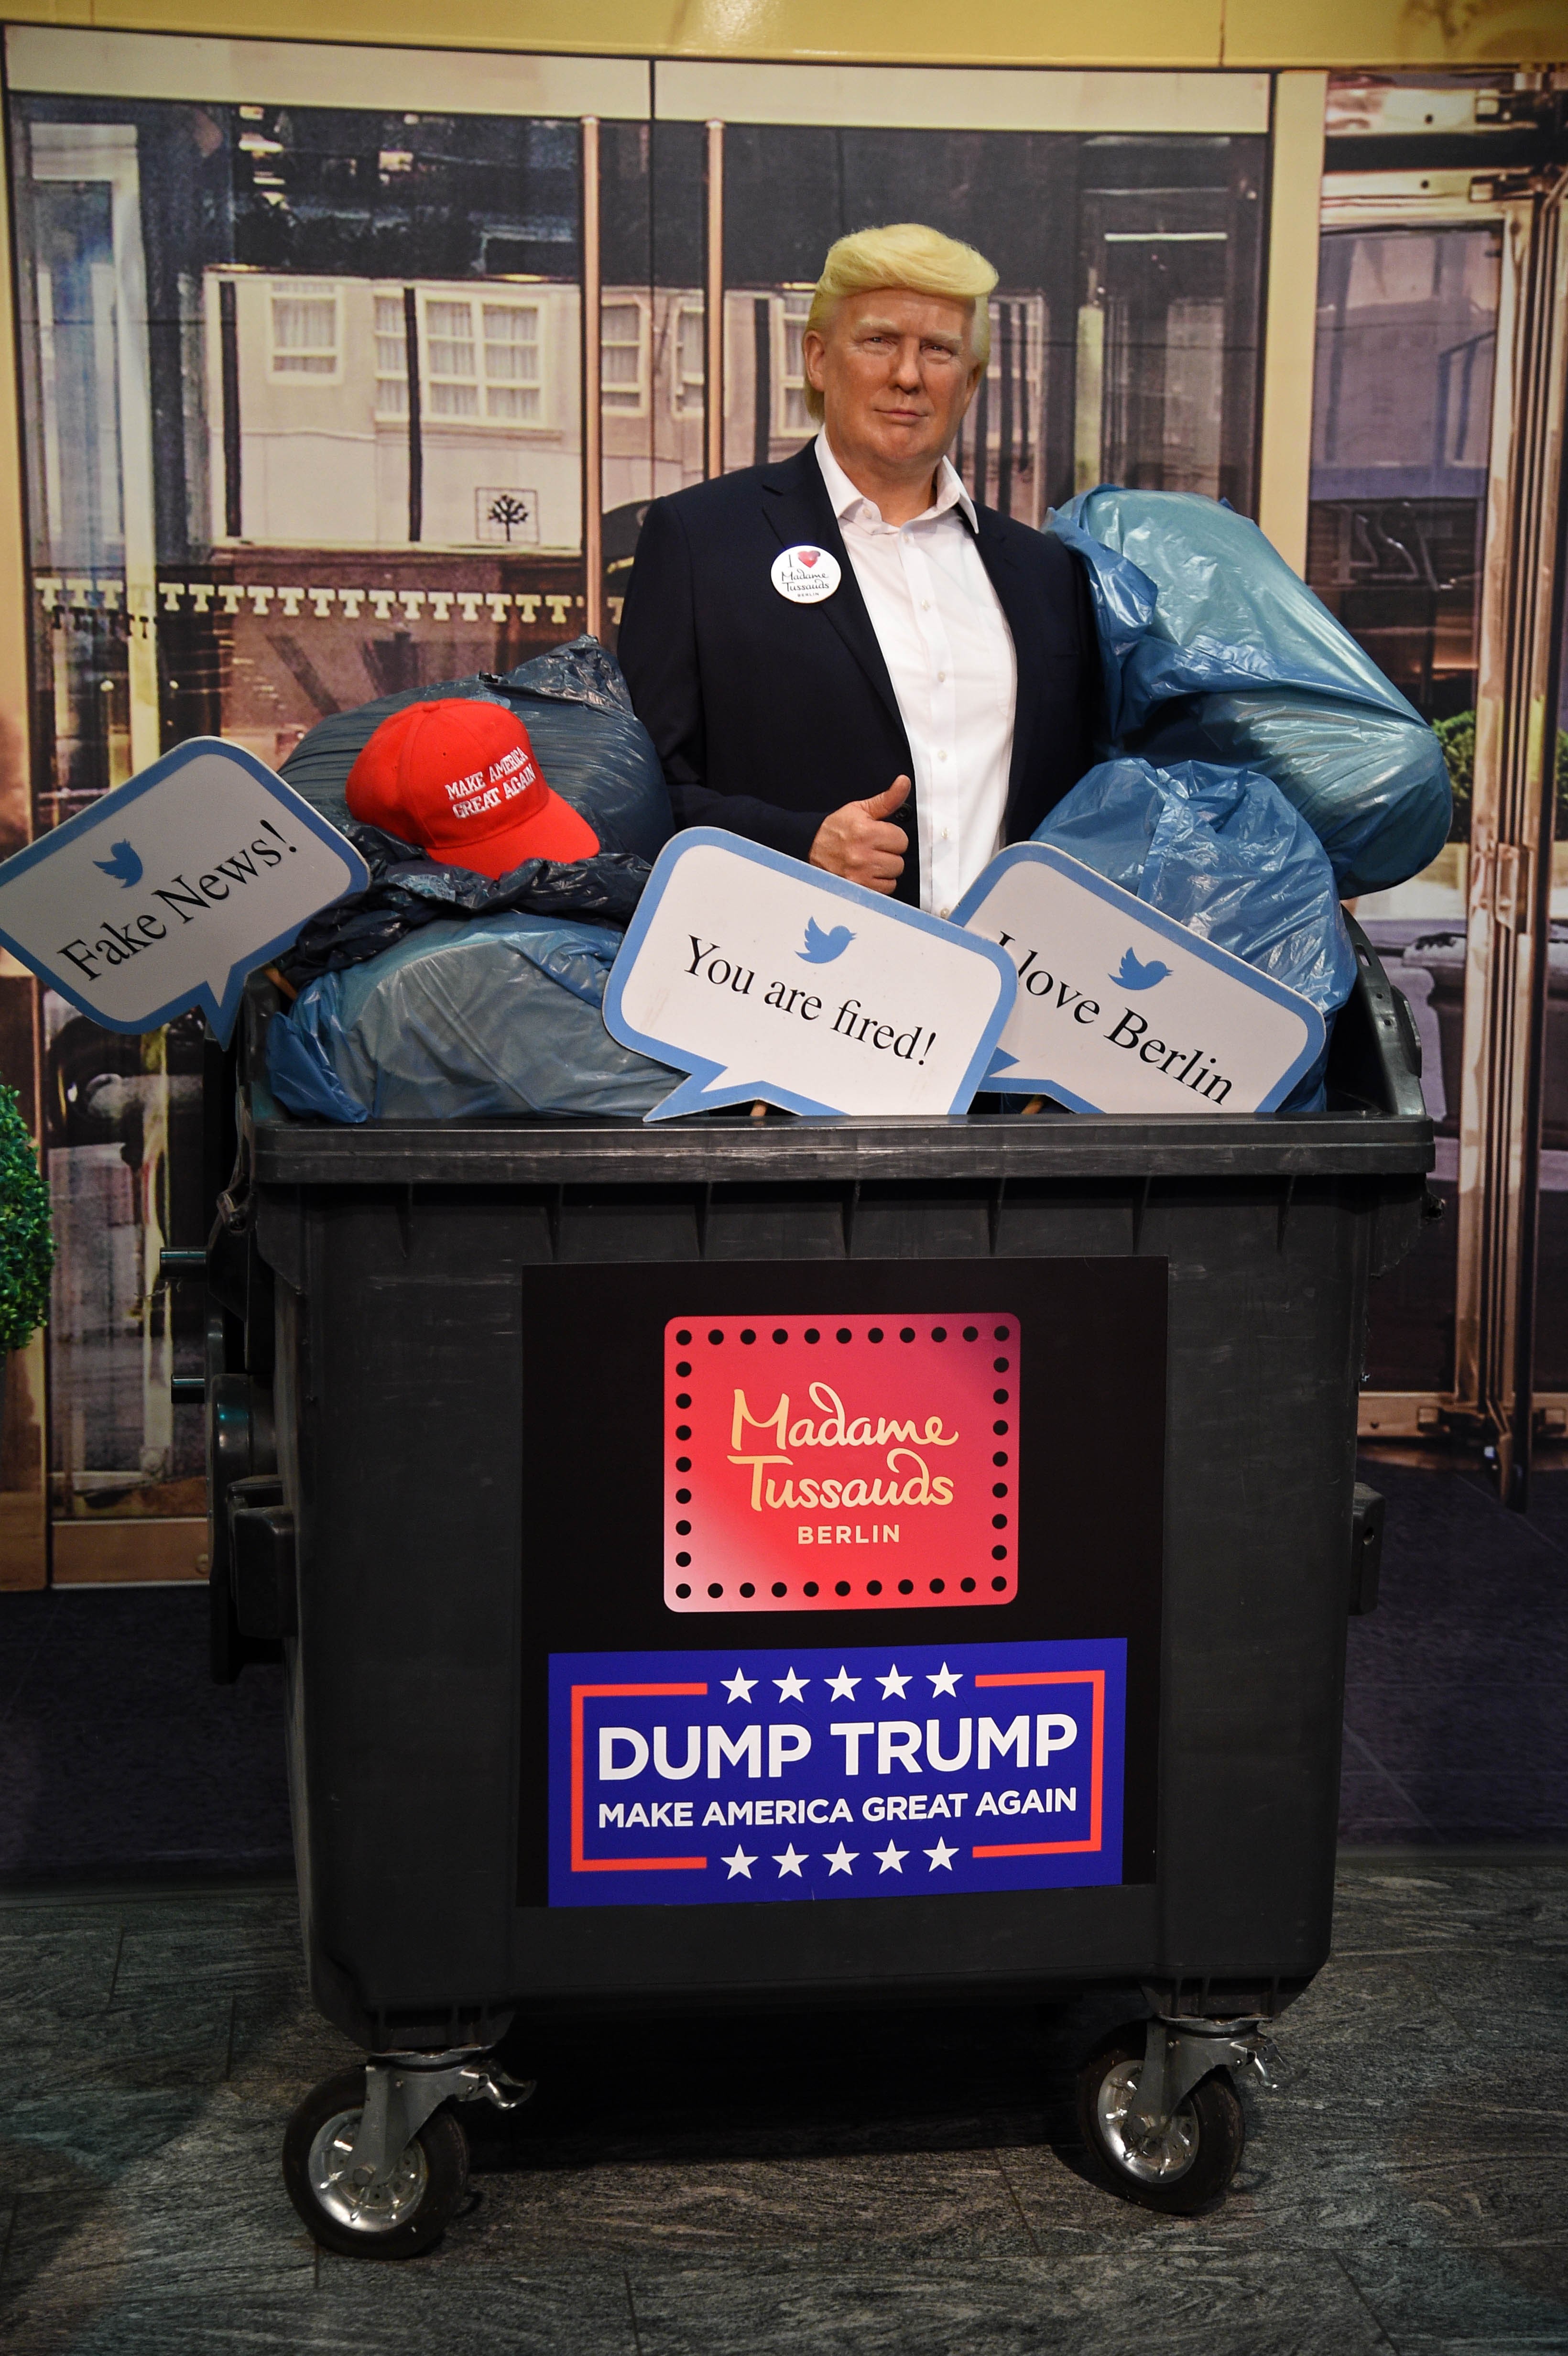 Madame Tussauds jogou a estátua de cera de Donald Trump no lixo (Foto: Getty Images)